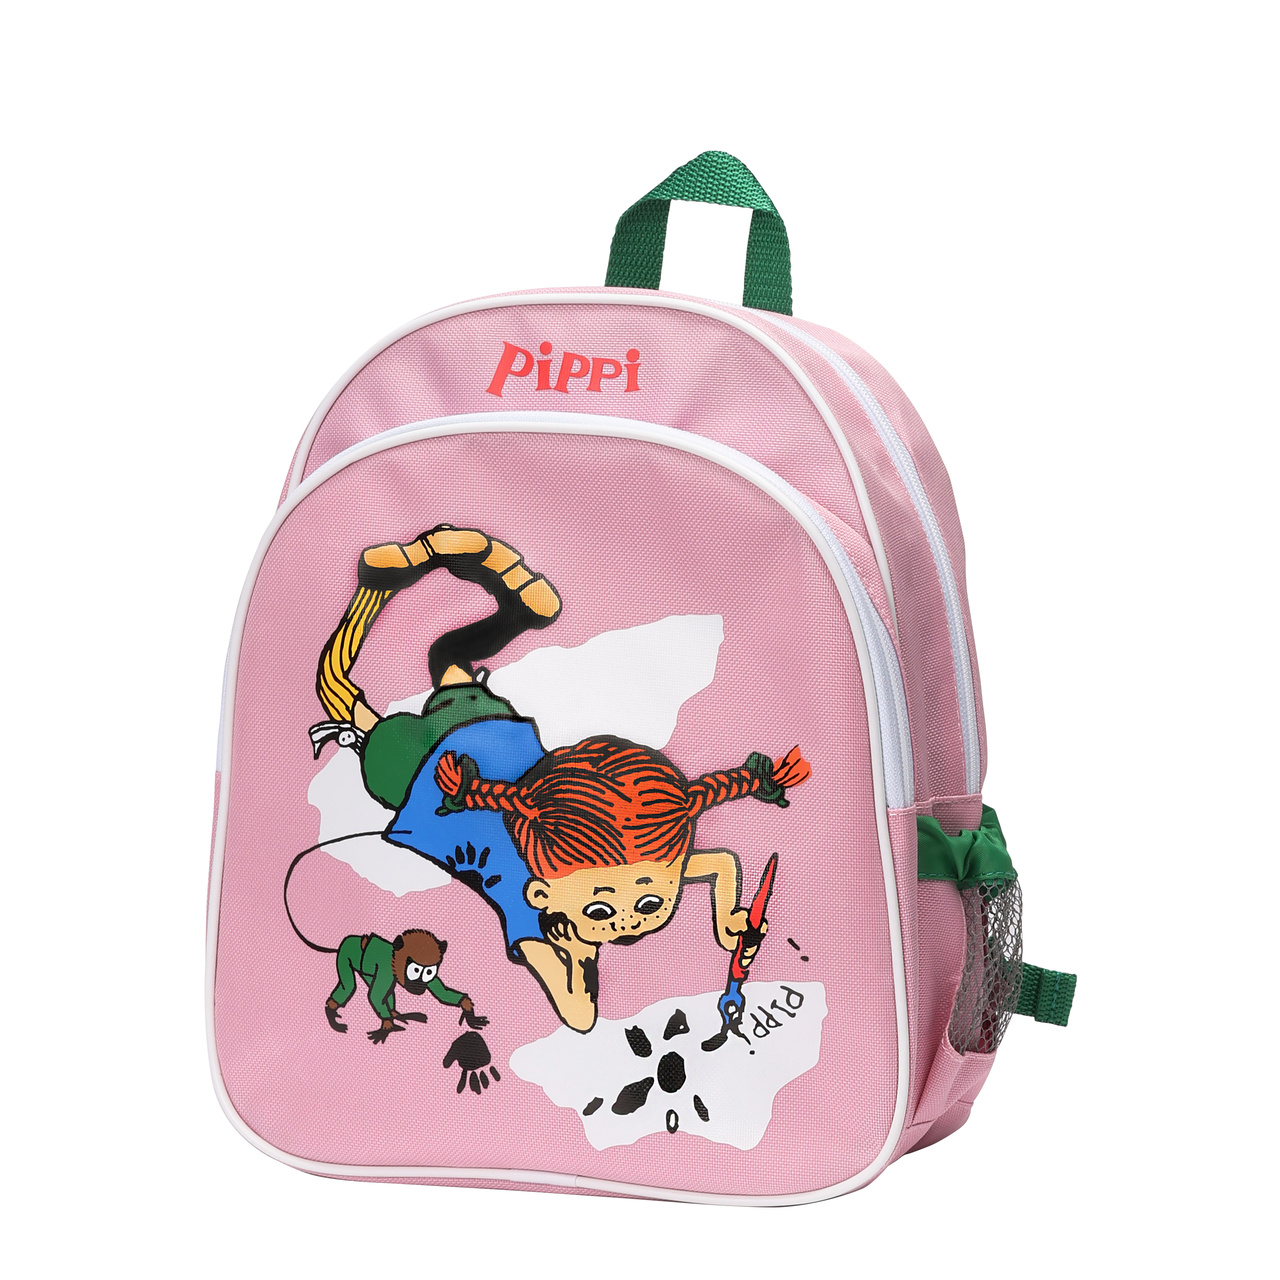 Kids bags pippi kids bag backpack pink